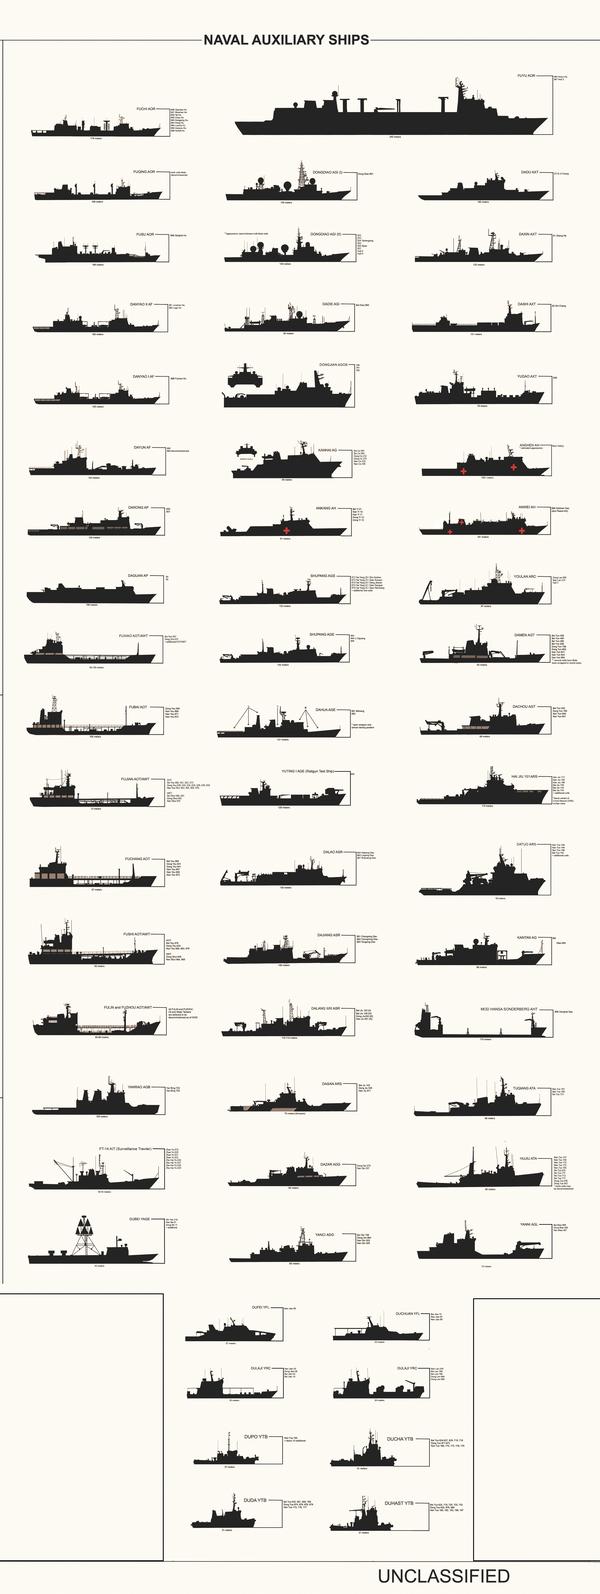 各国/地区海军舰艇概览04东亚地区大陆